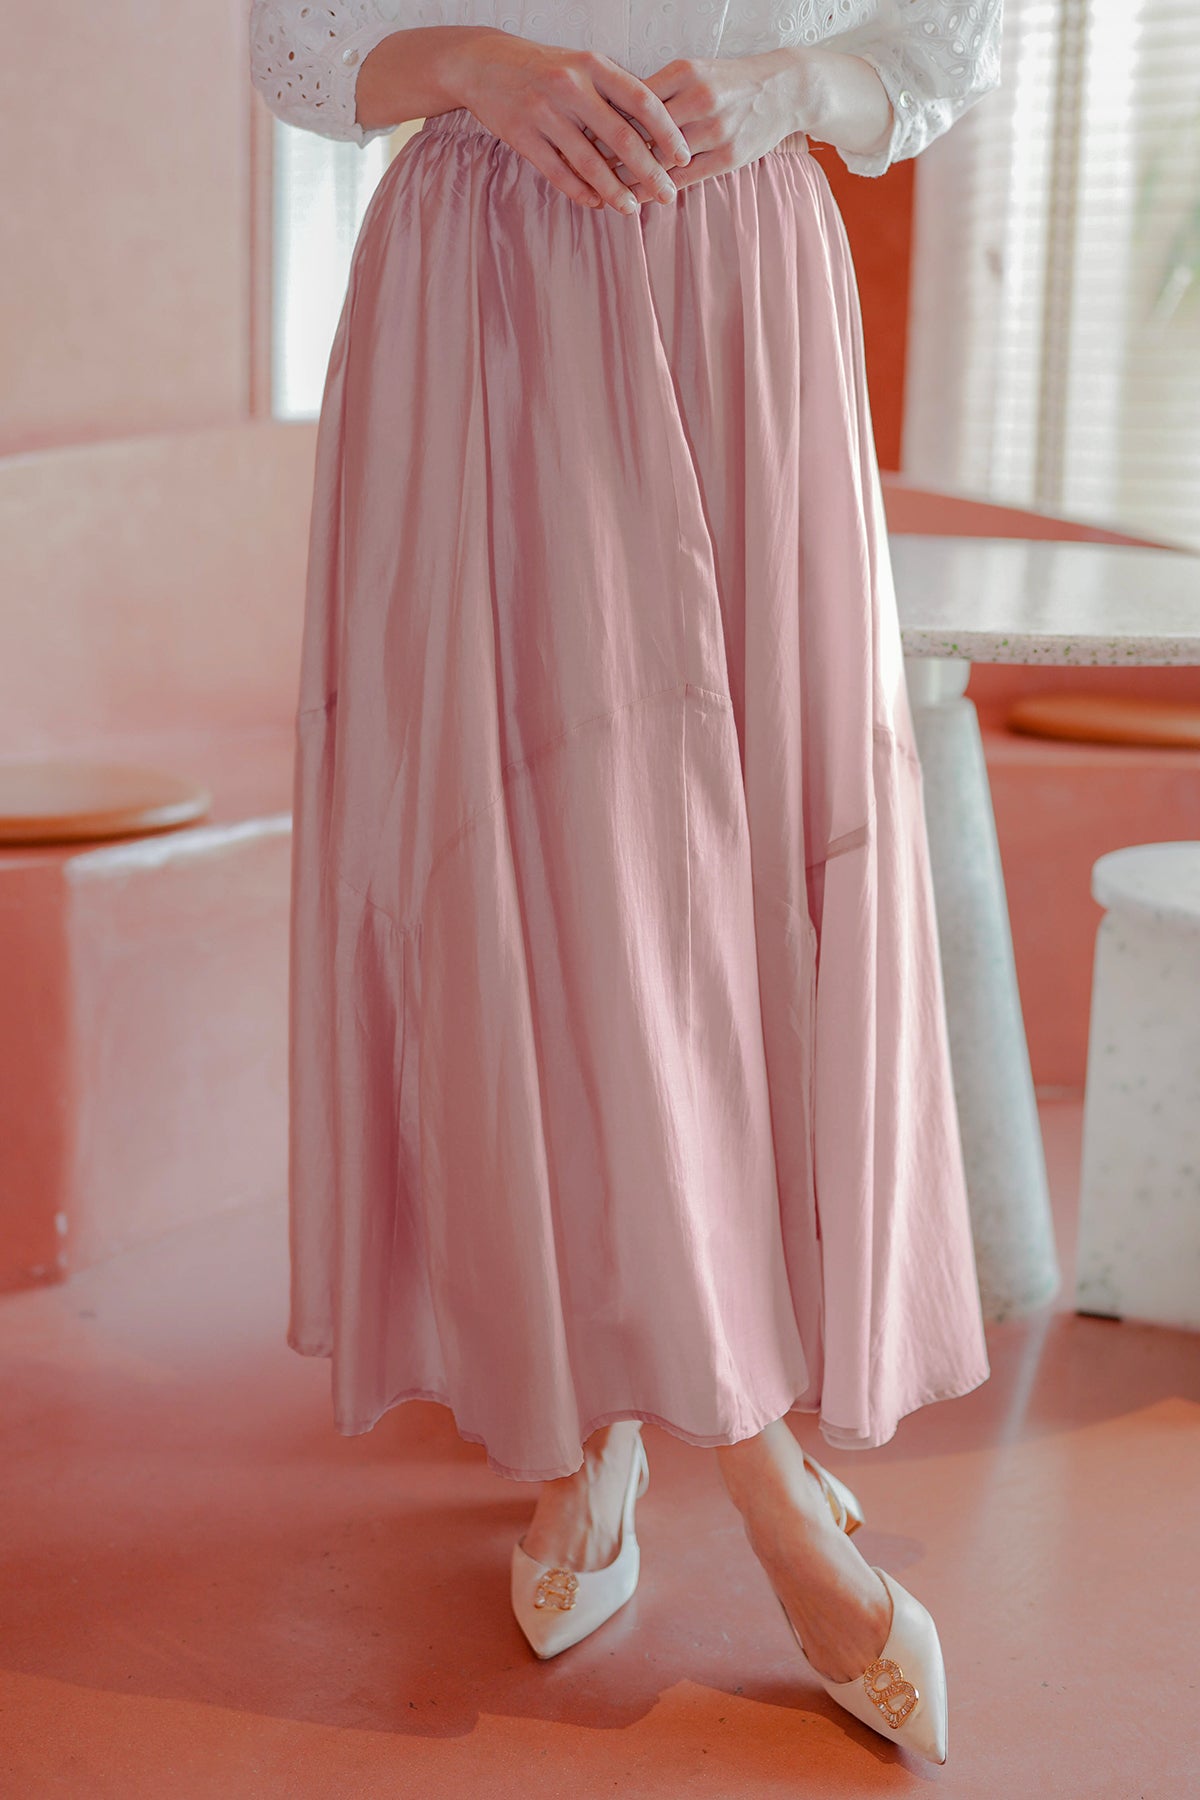 Sassafras Pink Flared Skirt - Buy Sassafras Pink Flared Skirt online in  India